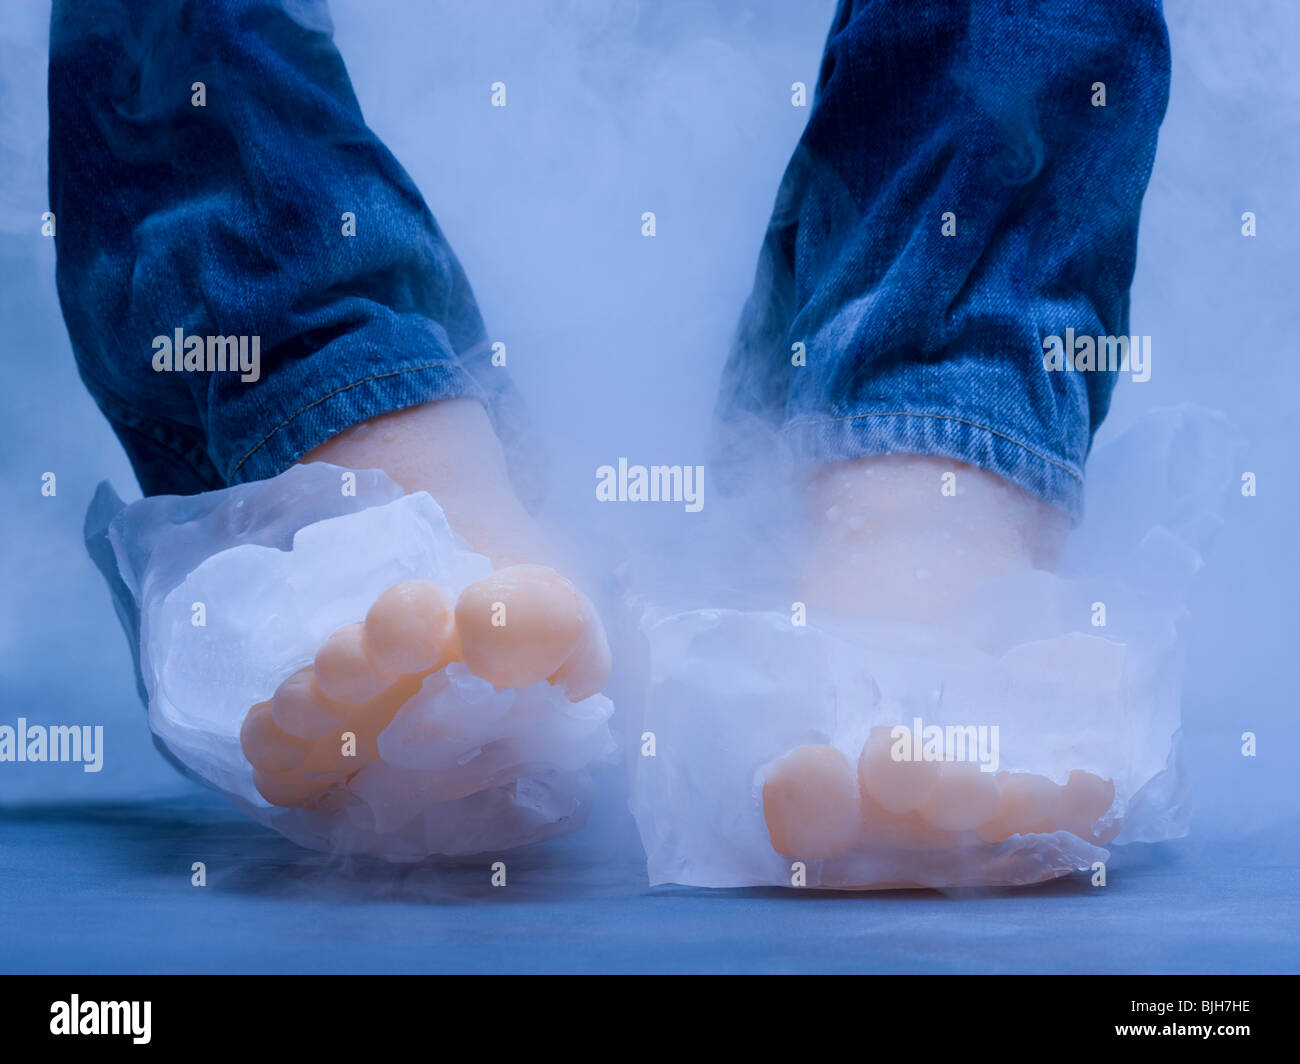 Piedi freddi immagini e fotografie stock ad alta risoluzione - Alamy